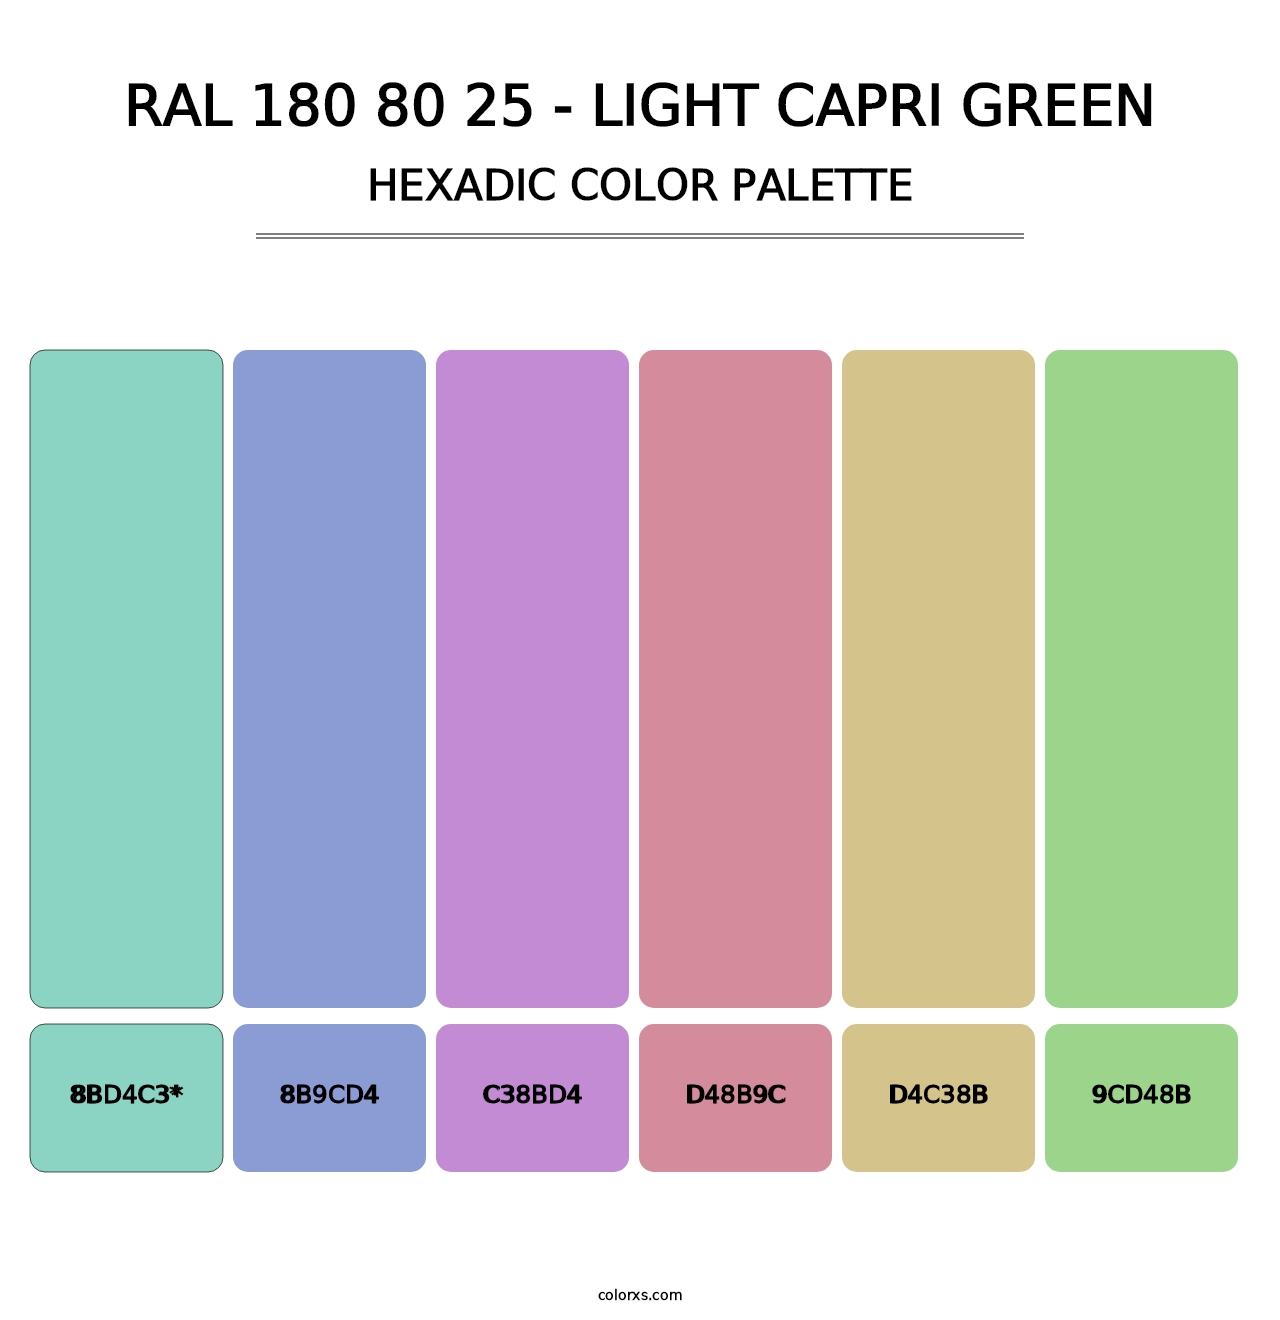 RAL 180 80 25 - Light Capri Green - Hexadic Color Palette